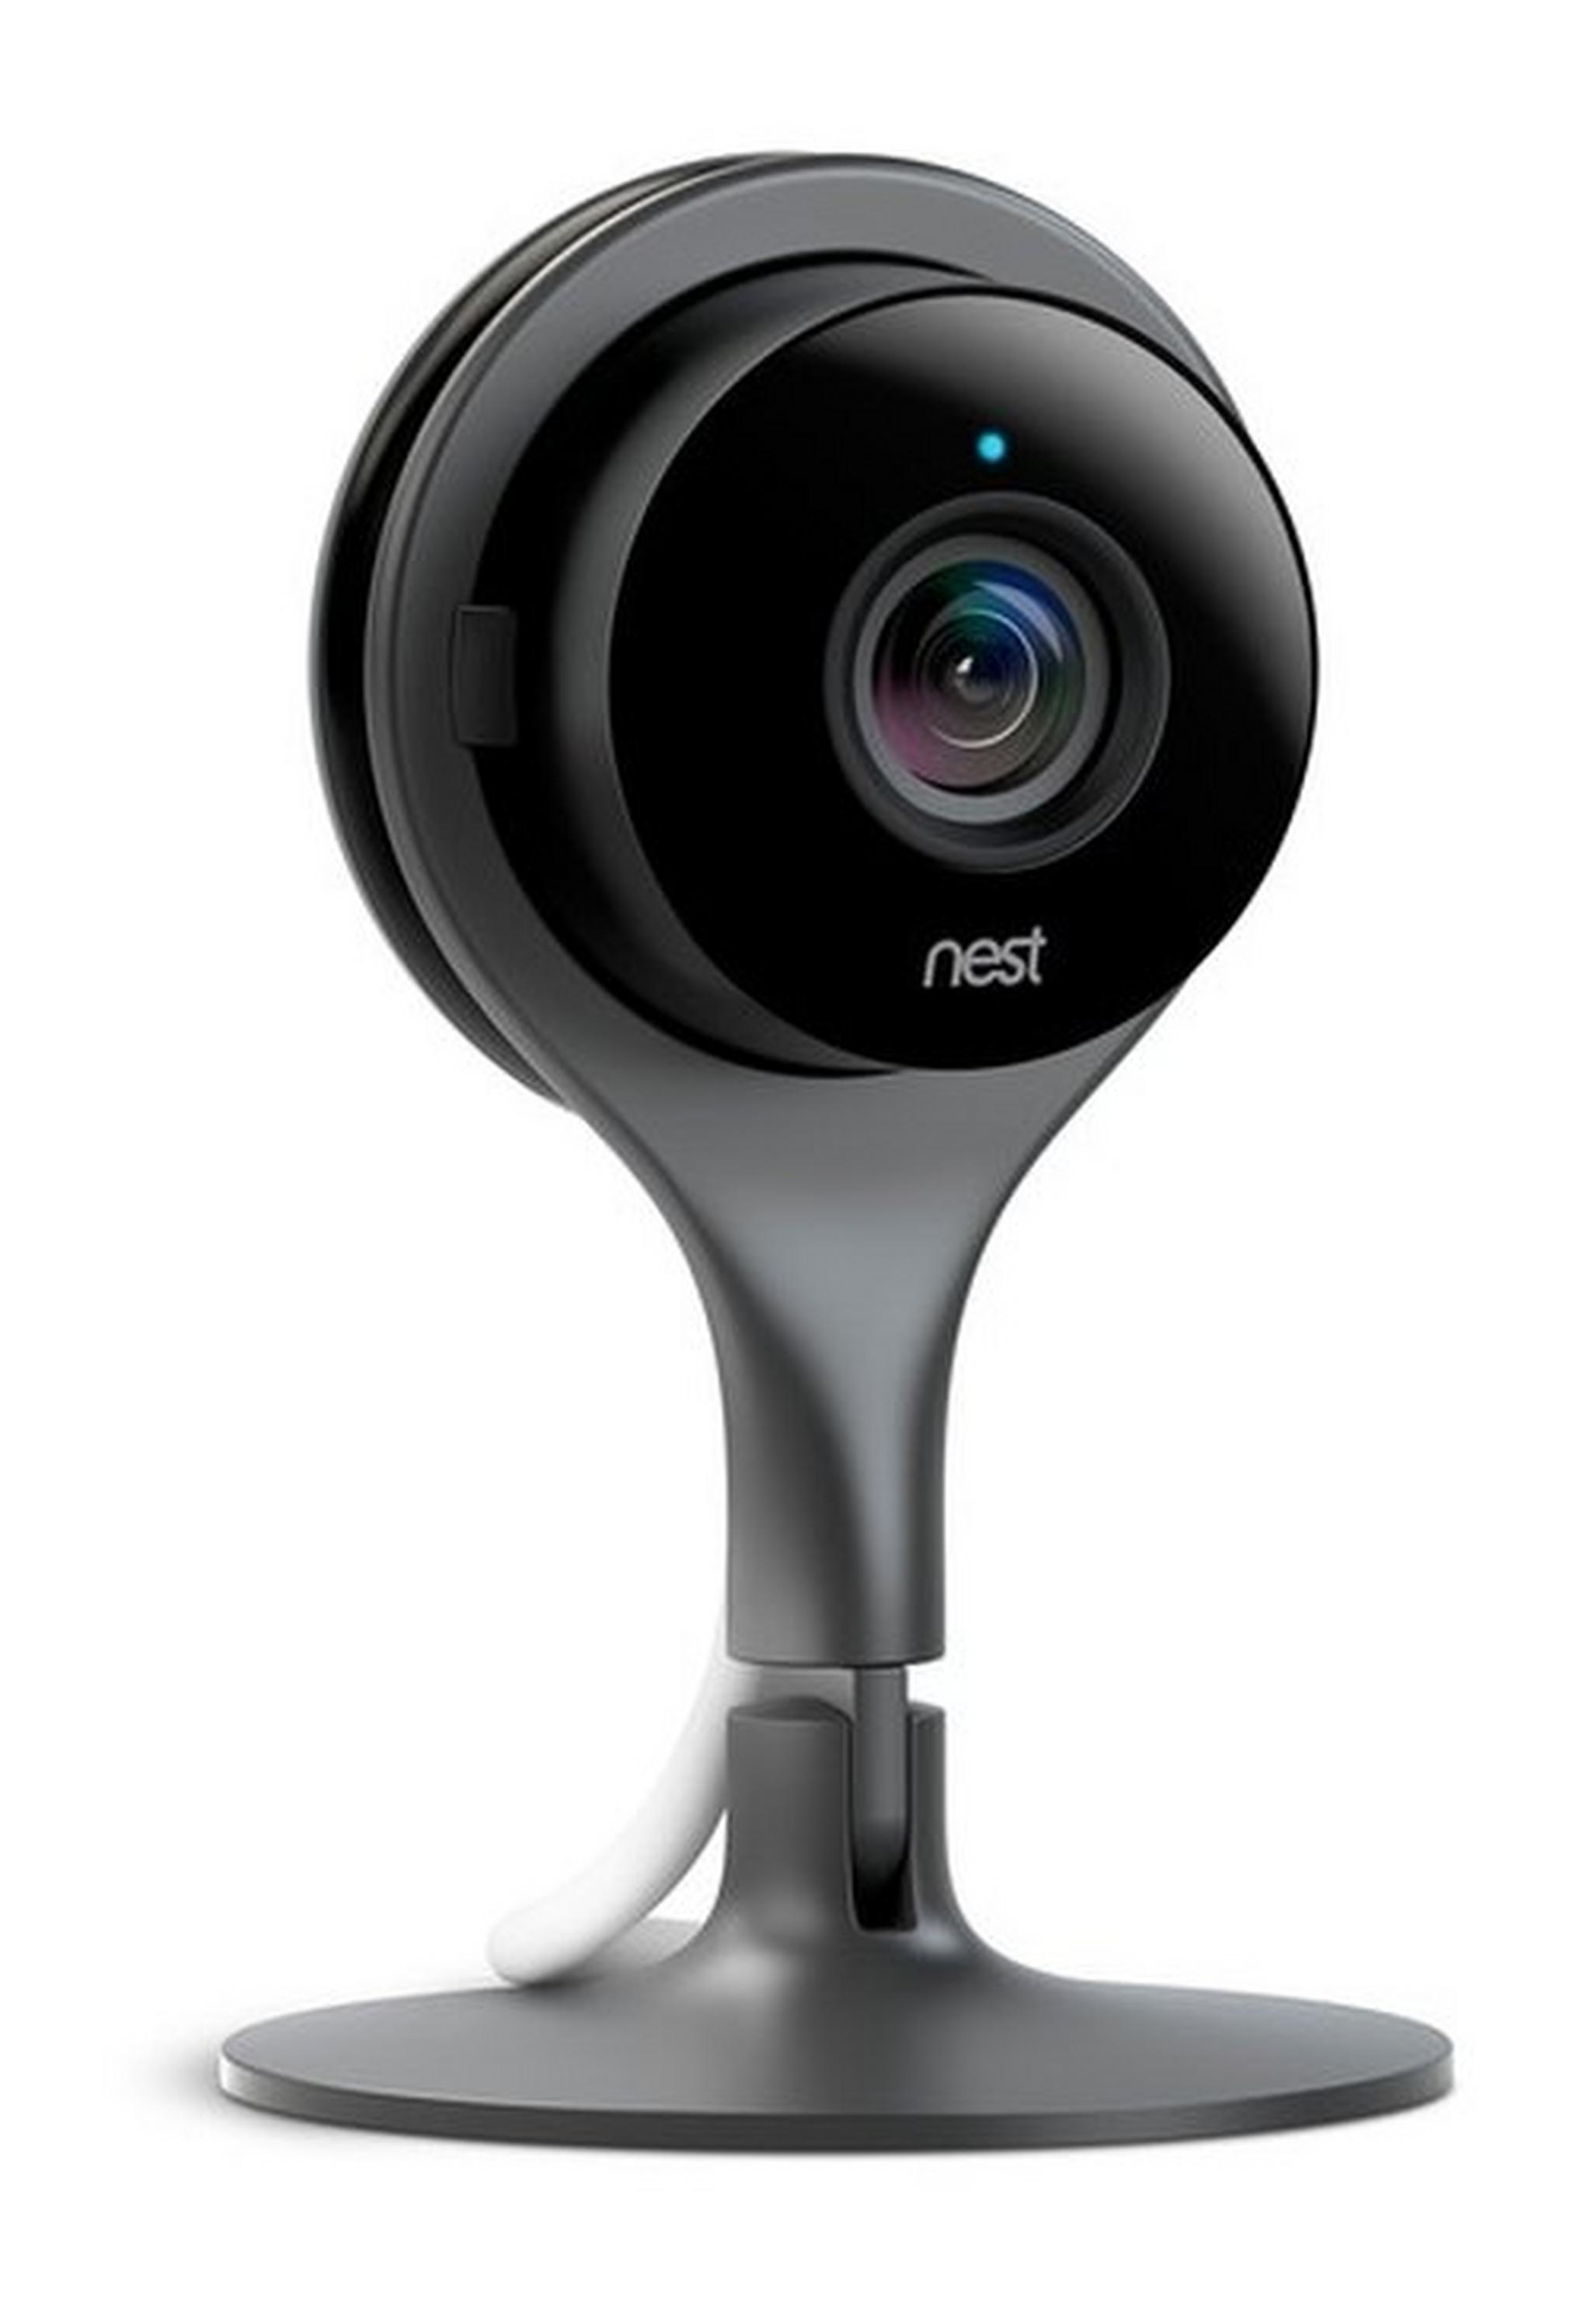 كاميرا مراقبة ذكية خارجية نيست من جوجل - أسود